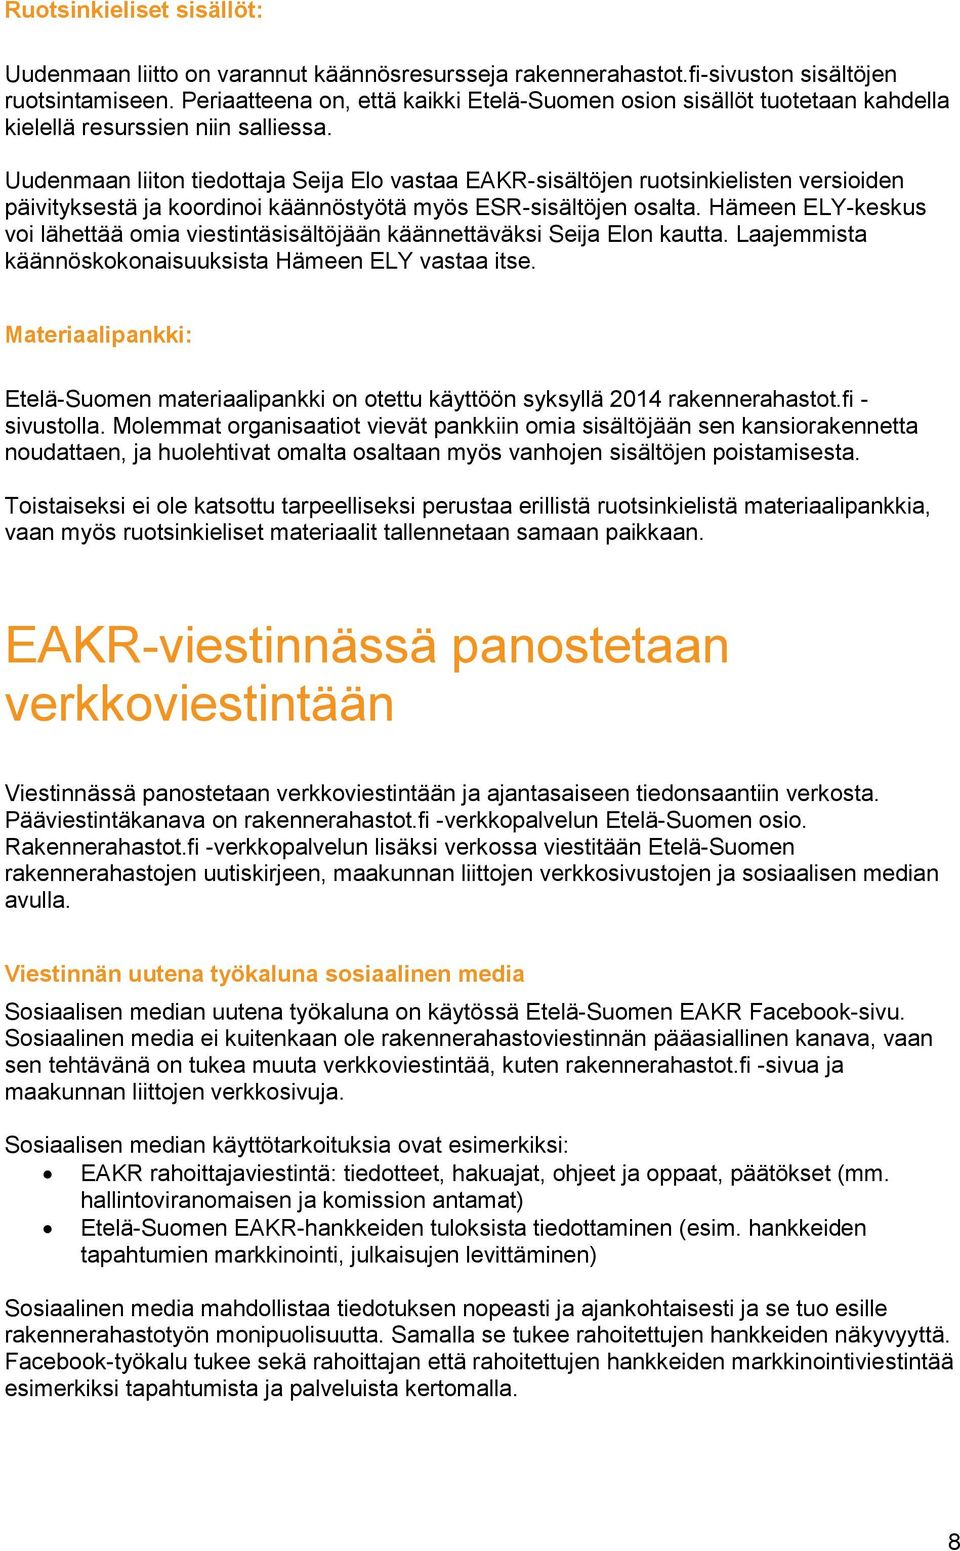 Uudenmaan liiton tiedottaja Seija Elo vastaa EAKR-sisältöjen ruotsinkielisten versioiden päivityksestä ja koordinoi käännöstyötä myös ESR-sisältöjen osalta.